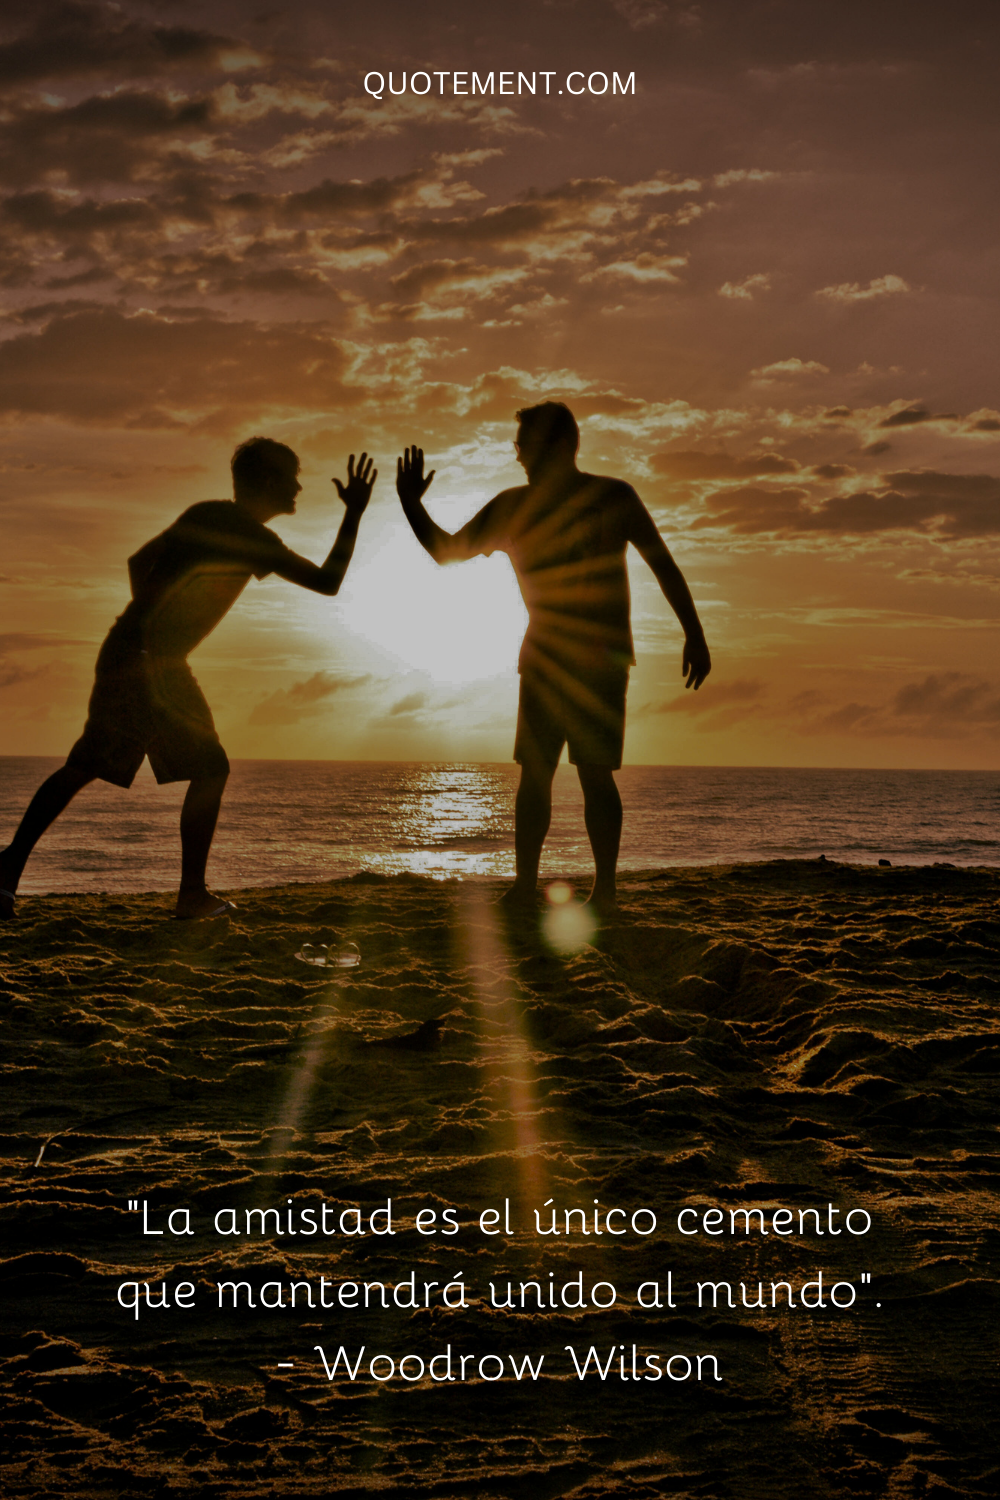 "La amistad es el único cemento que mantendrá unido al mundo". - Woodrow Wilson